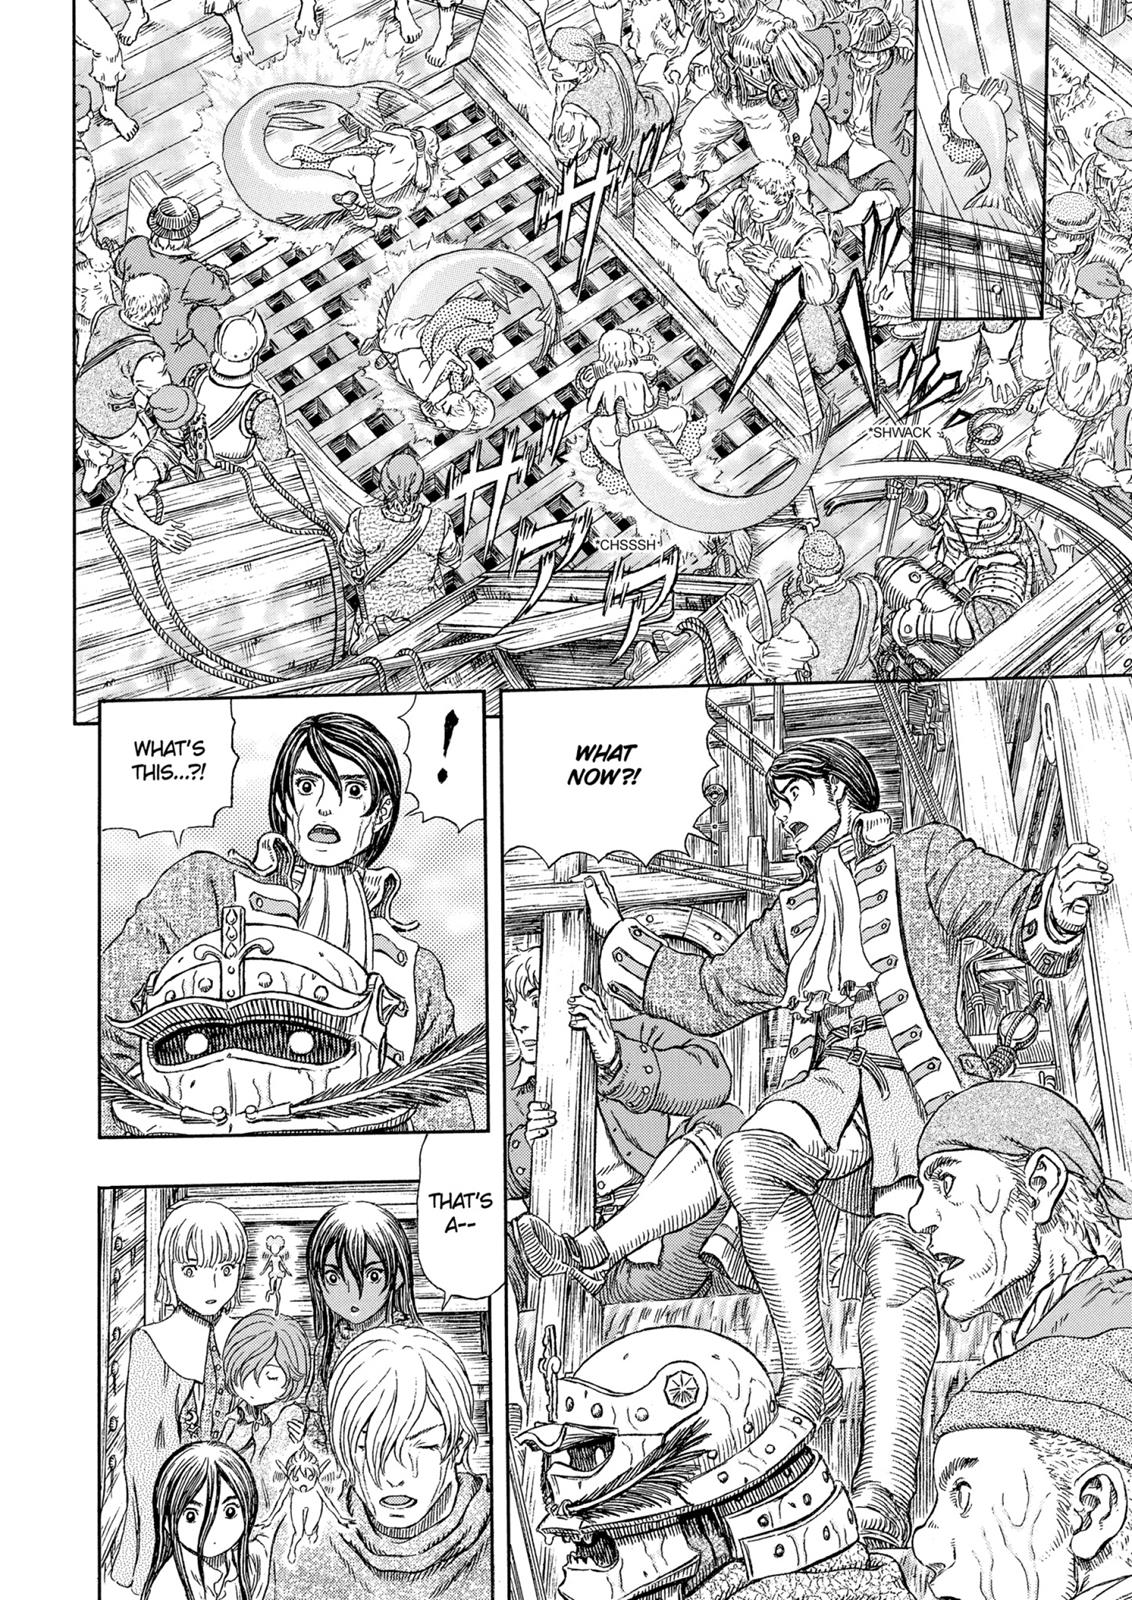 Berserk Manga Chapter 324 image 03